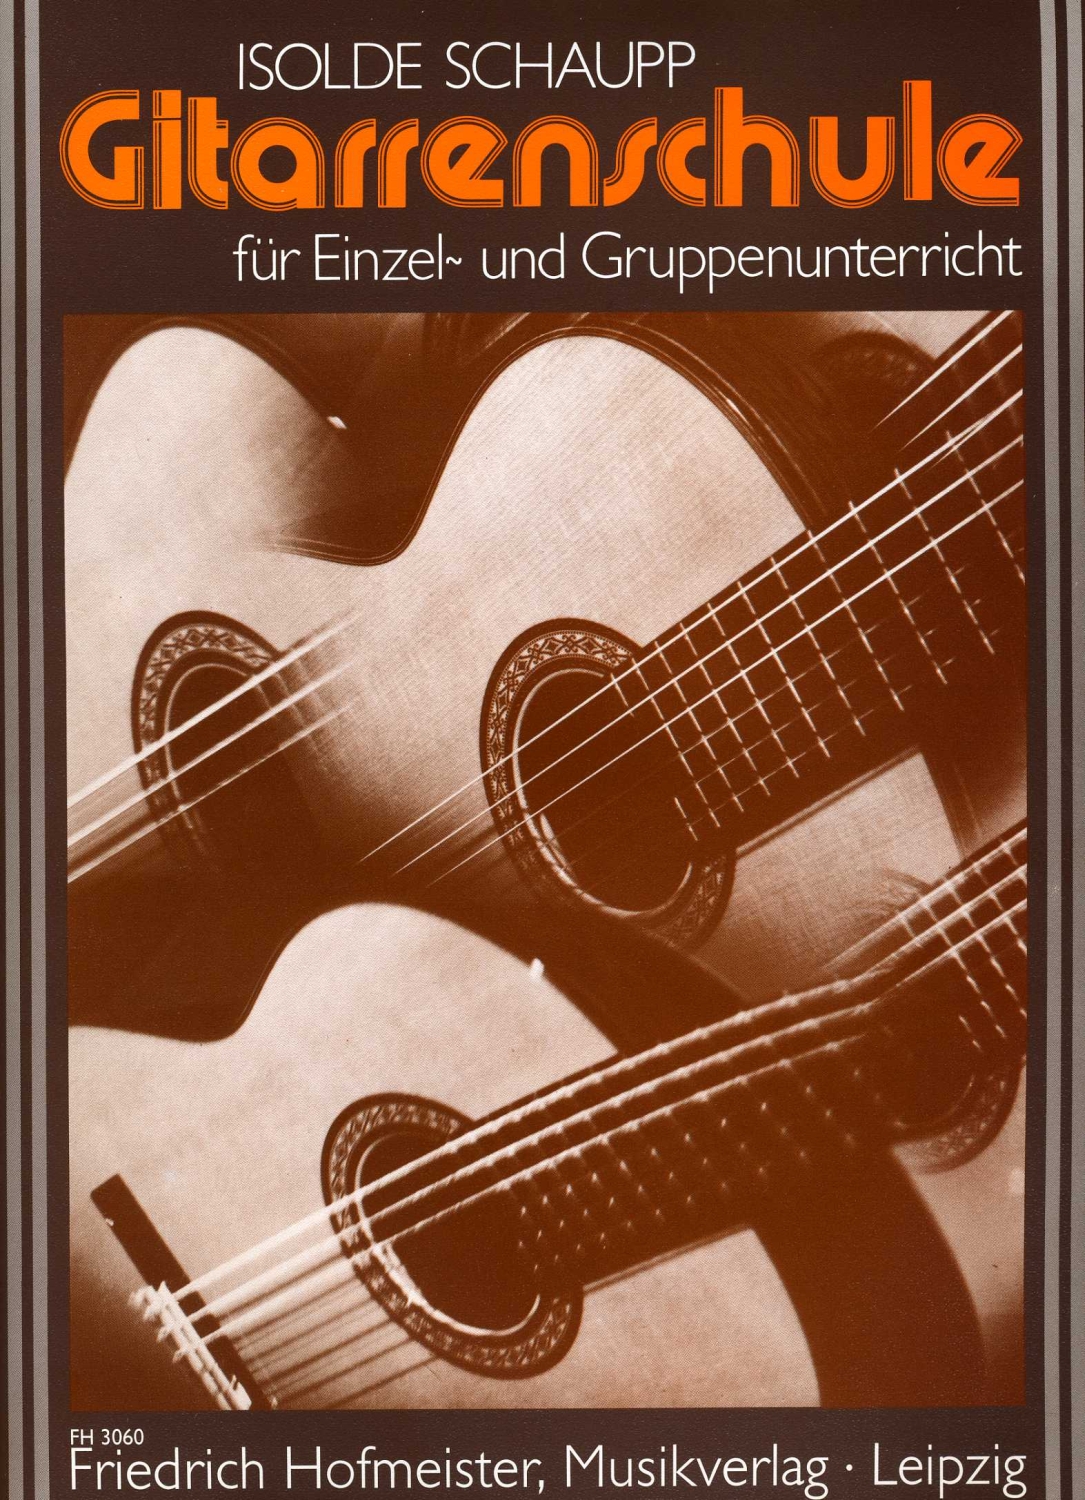 Isolde-Schaupp-Gitarrenschule-Gtr-_0001.JPG